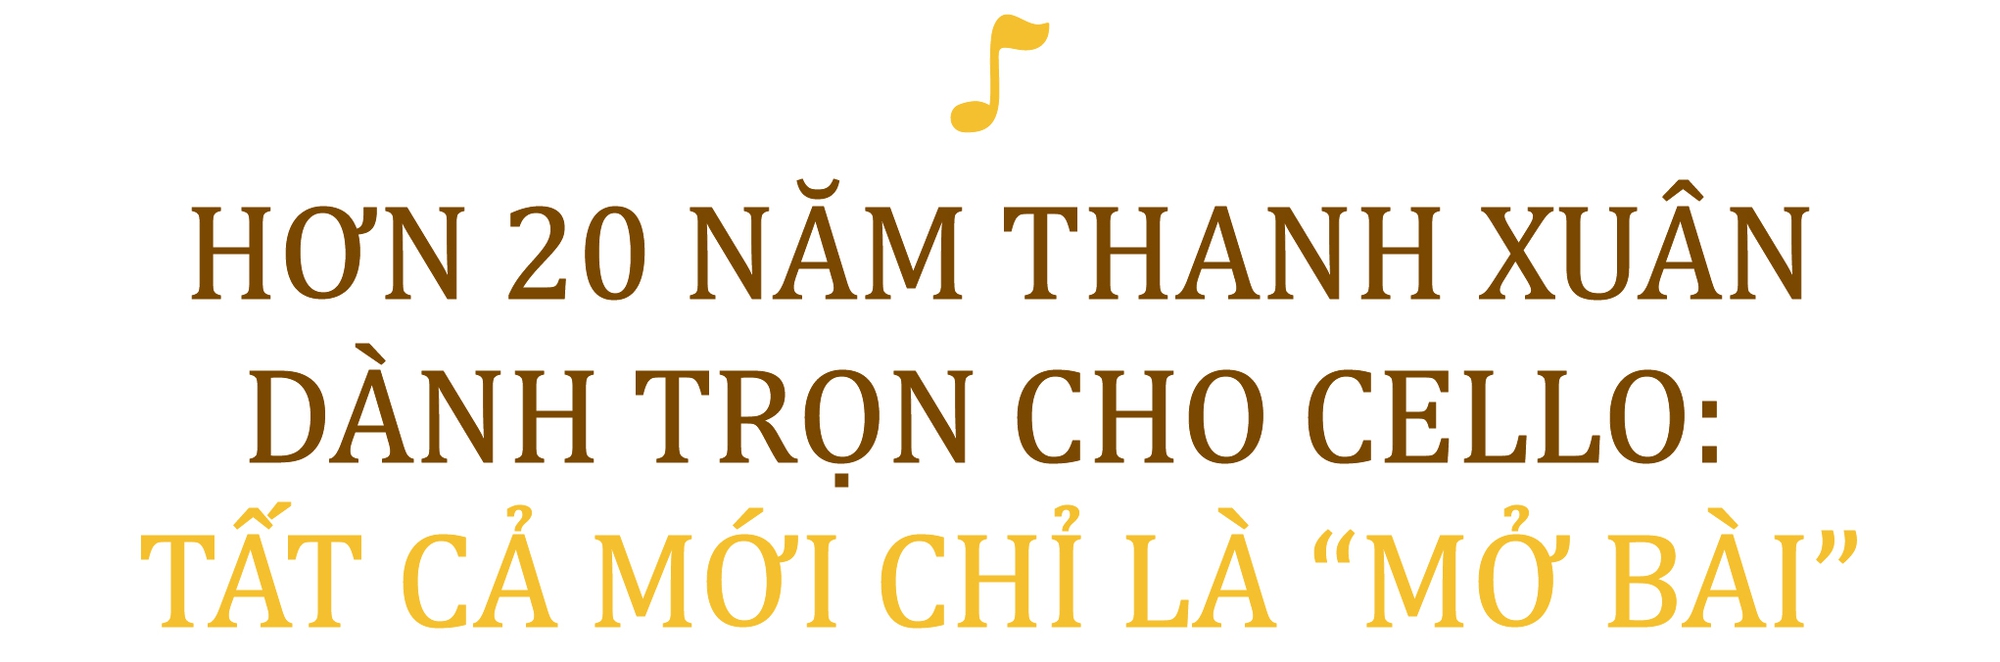 NS Đinh Hoài Xuân: 22 năm thanh xuân hết mình vì nhạc cổ điển với 3 cuốn sổ ghi nợ dày cộp - Ảnh 2.